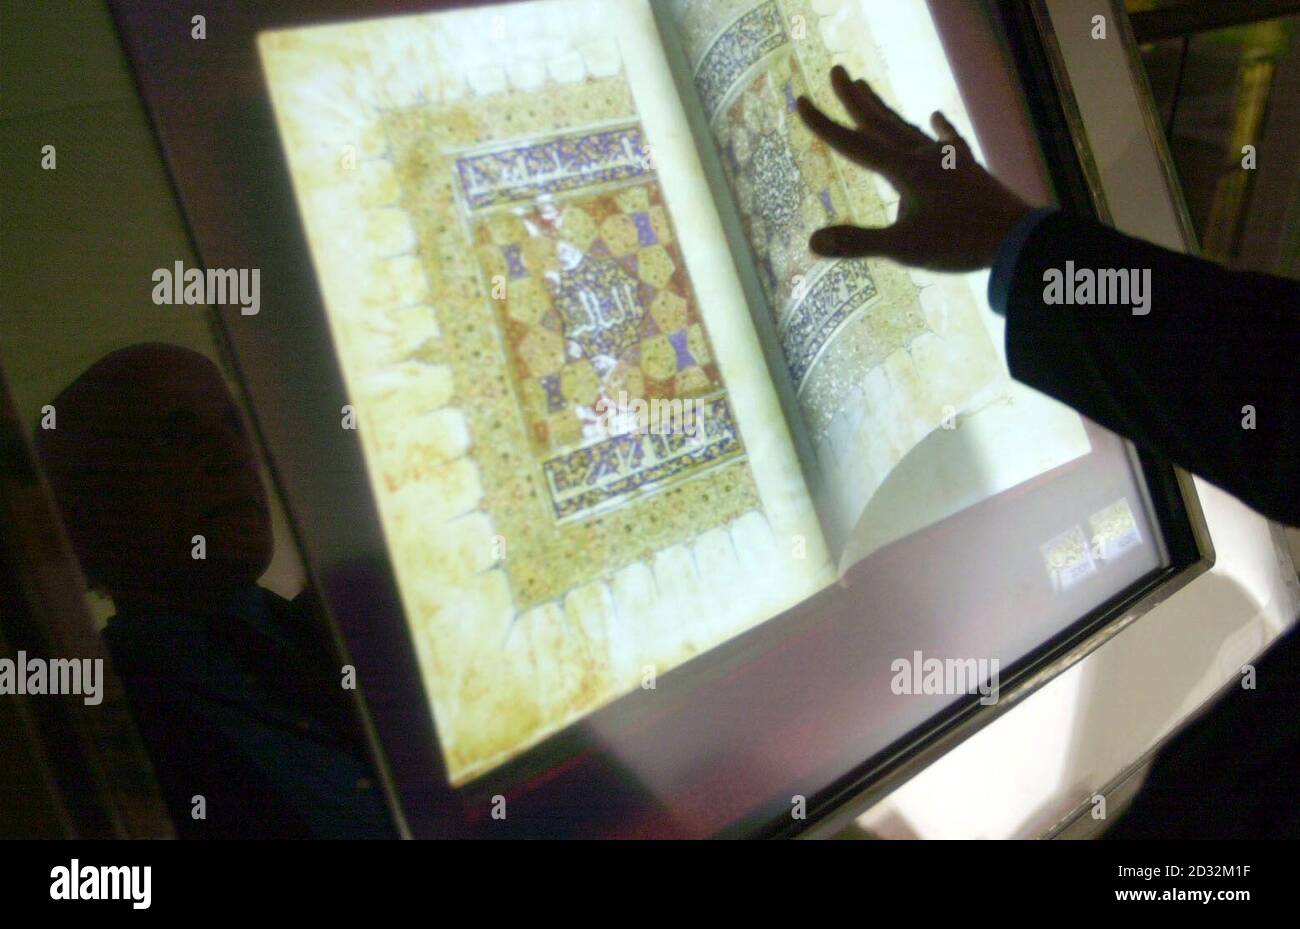 Zulfiqar Bukhari, de la Sección de Adquisiciones de la Biblioteca Británica, utiliza una versión electrónica del Qur'an del Sultán Baybars, dentro de la Biblioteca Británica en el centro de Londres. * el Sultán Baybars' Qu'ran, producido por primera vez en el Cairo hace setecientos años, Es el primer guión islámico que se beneficia de la tecnología "Turning the Pages" de la Biblioteca Británica y permite a los visitantes "convertir" una selección de páginas de versiones digitalizadas de los principales elementos históricos de la colección de la biblioteca y verlos con mayor detalle de lo que es posible desde el original. Foto de stock